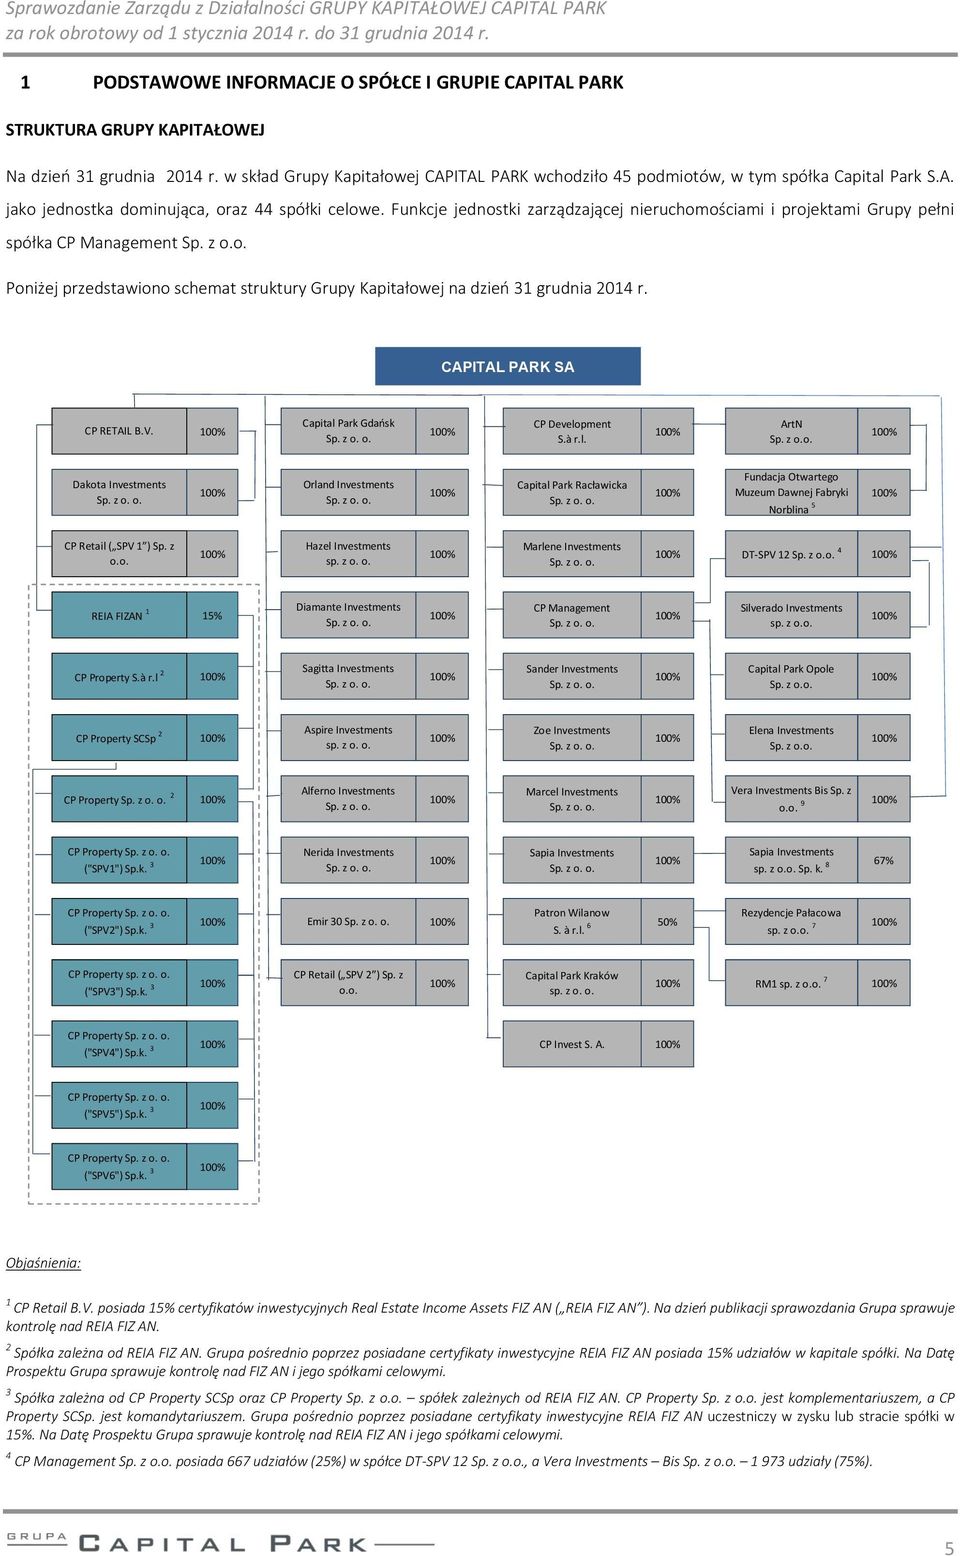 Funkcje jednostki zarządzającej nieruchomościami i projektami Grupy pełni spółka CP Management Sp. z o.o. Poniżej przedstawiono schemat struktury Grupy Kapitałowej na dzień 31 grudnia 2014 r.